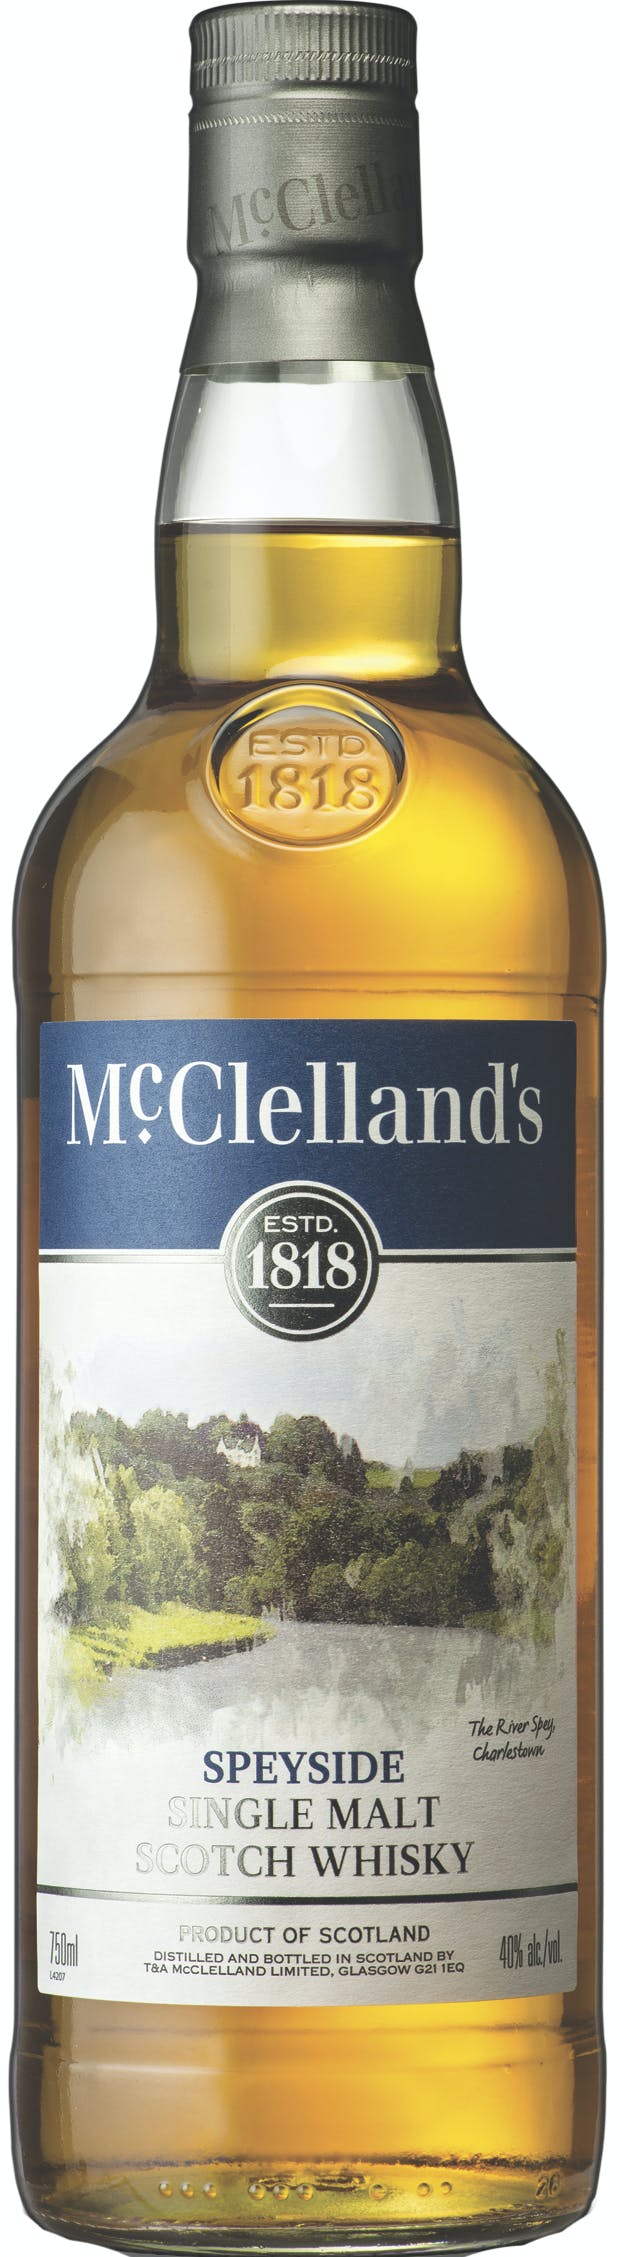 MCCLELLANDS SPEYSIDE SCOTCH Scotch BeverageWarehouse